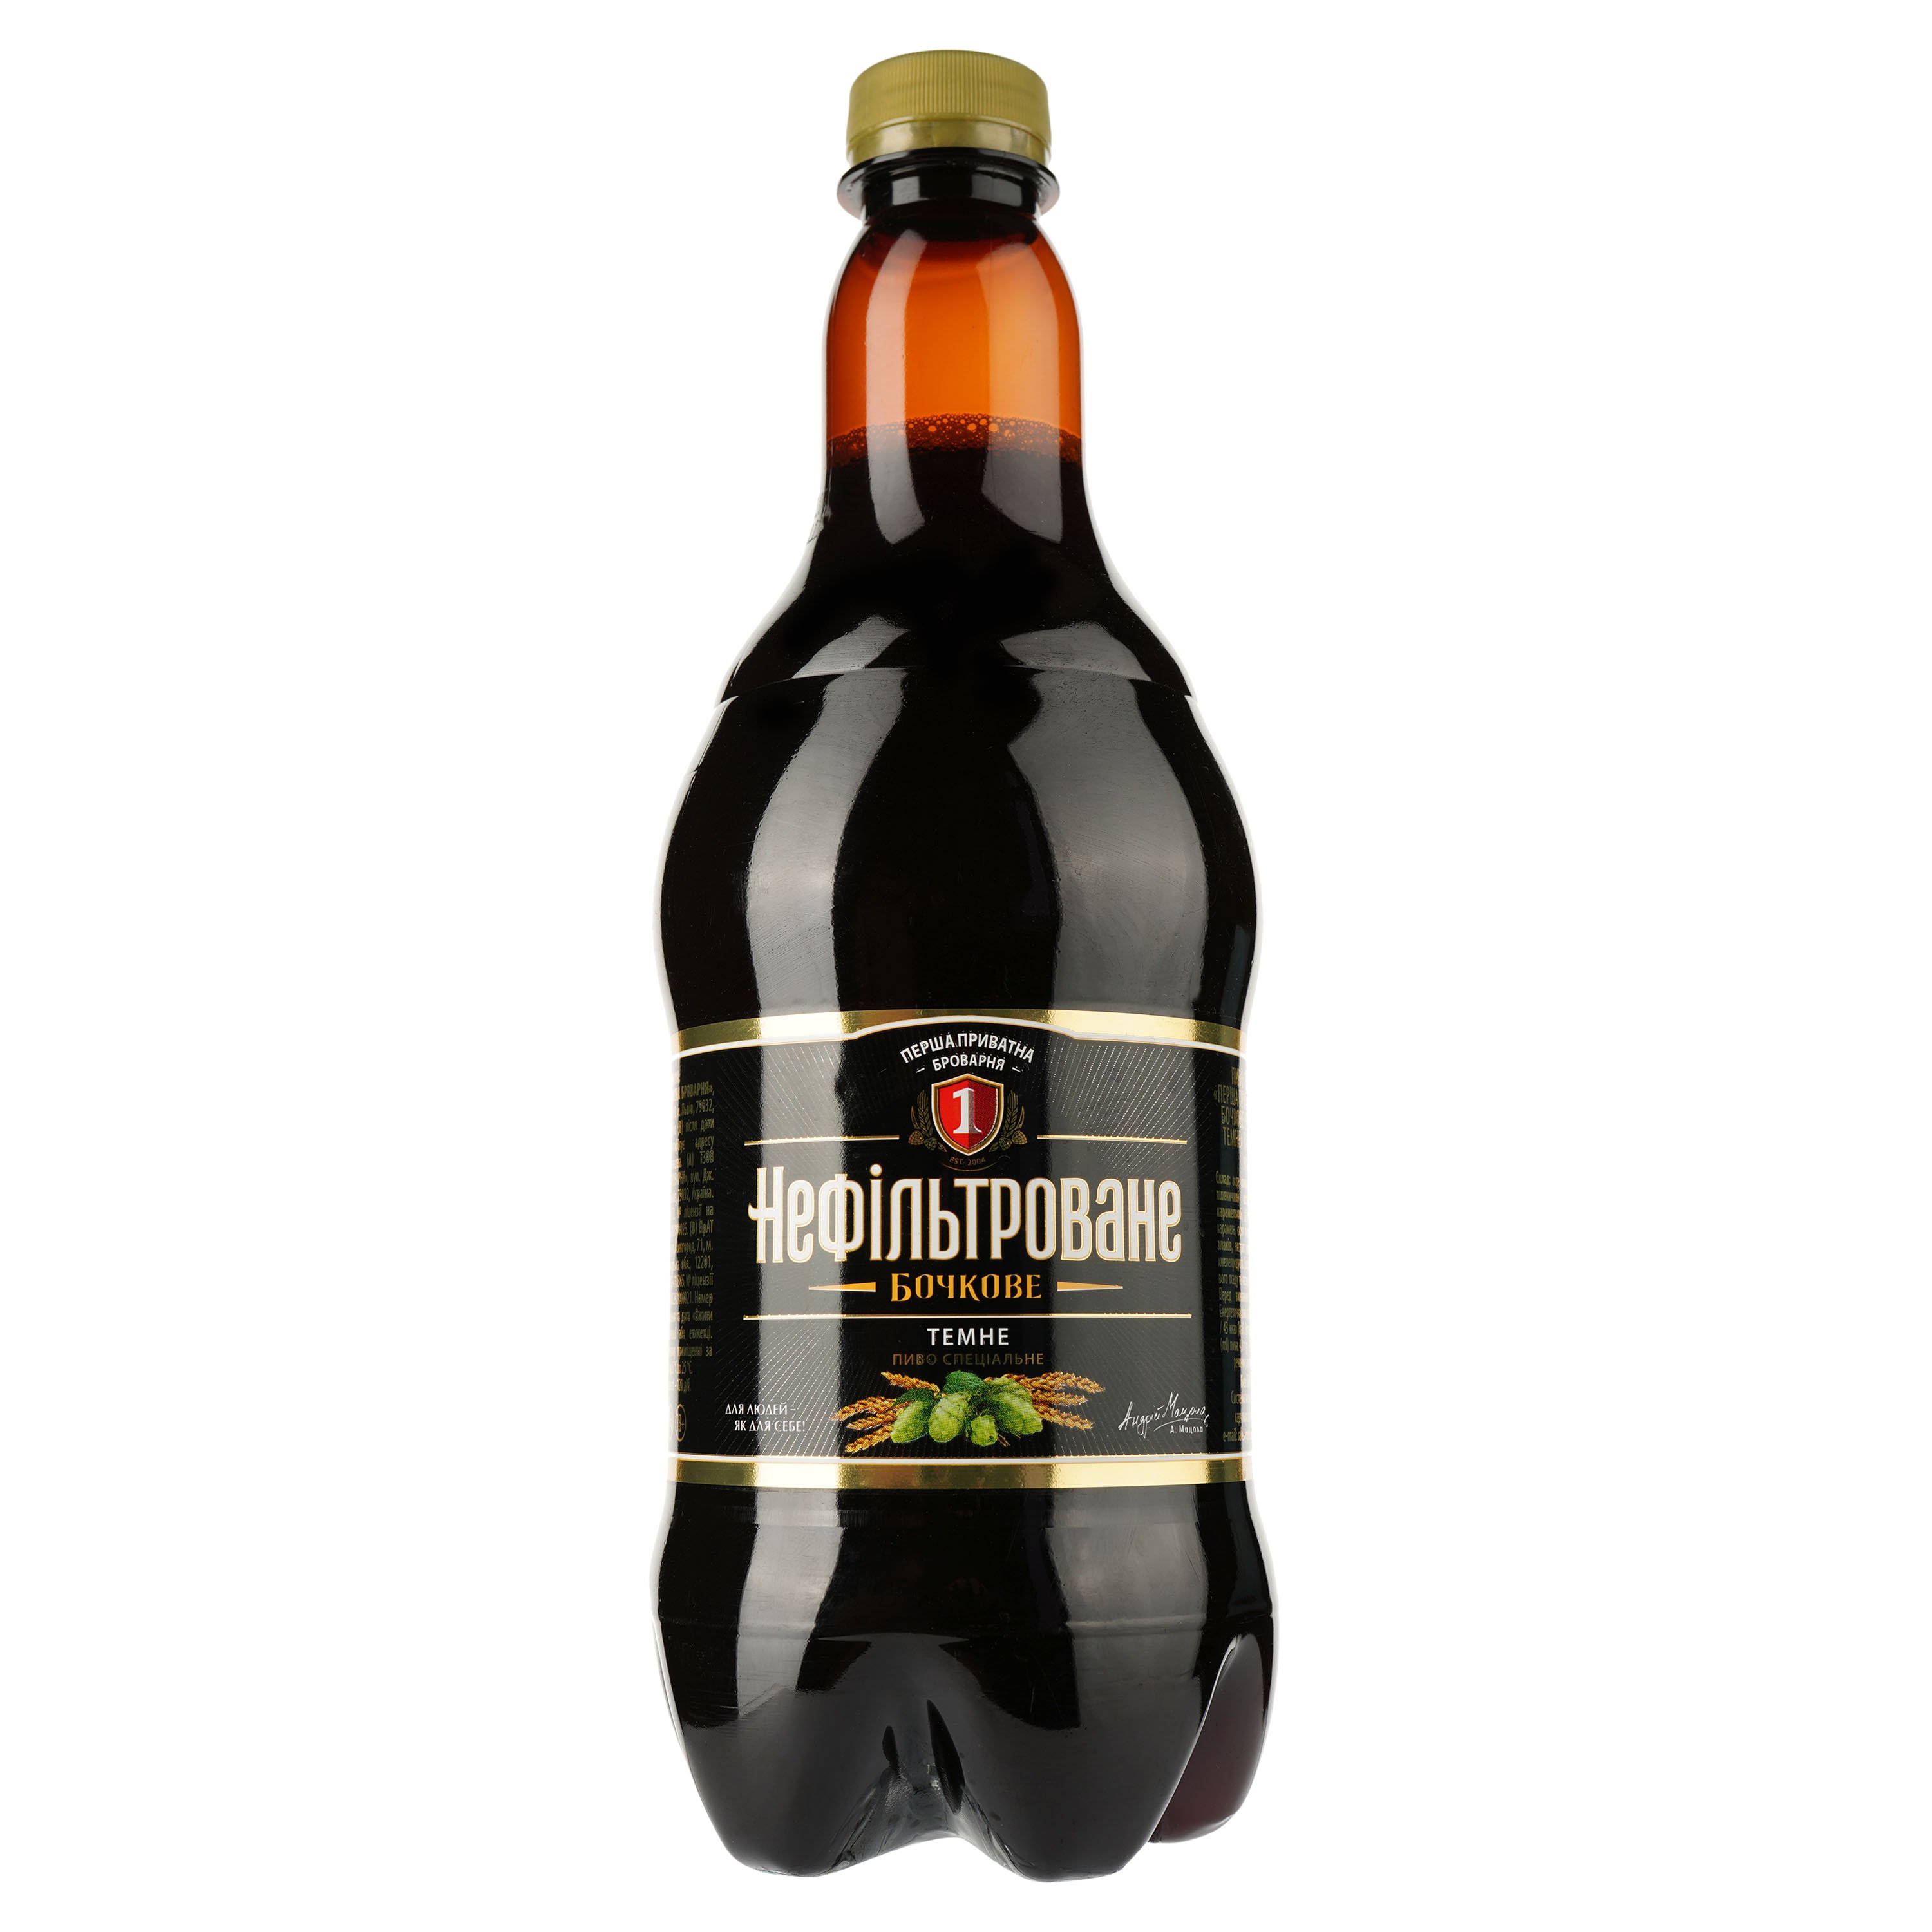 Пиво Перша приватна броварня Бочковое, темное, нефильрованное, 4,8%, 0,9 л (770492) - фото 1